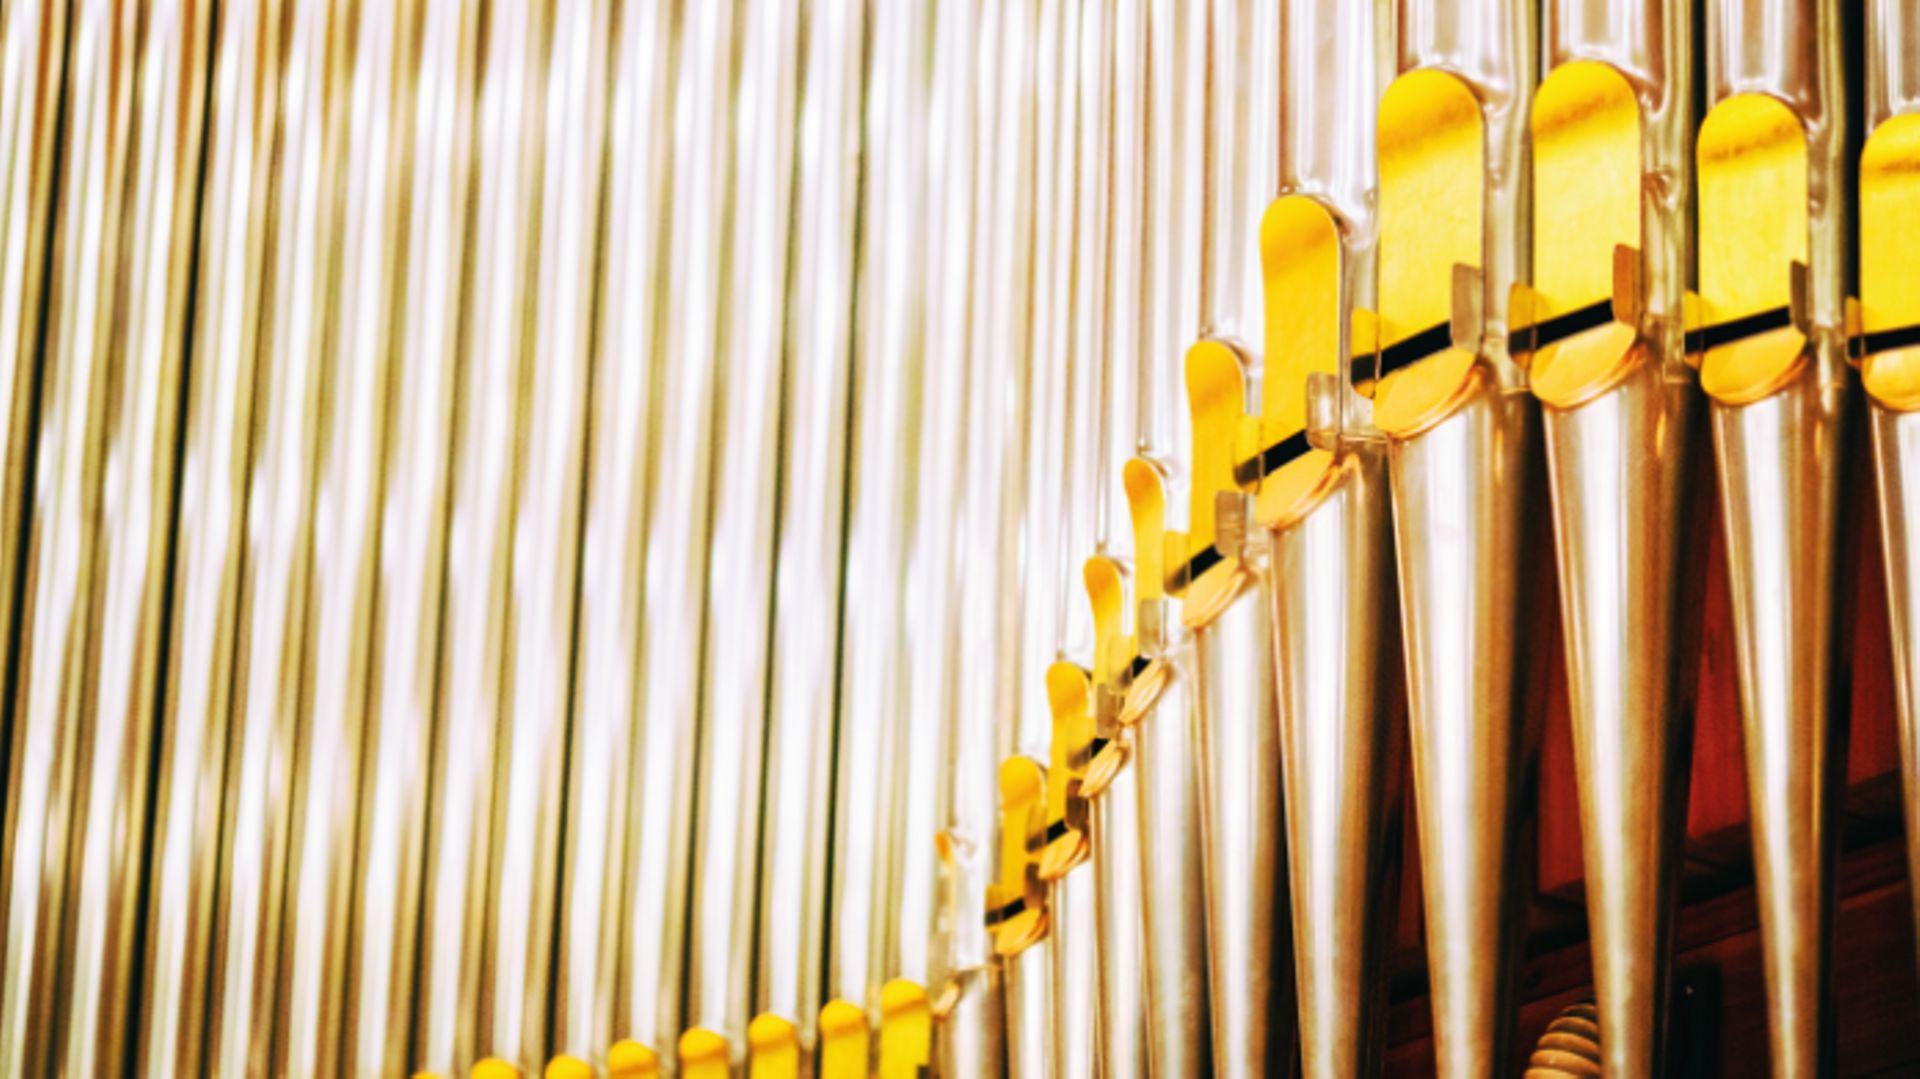 Instrument acoustique, l’orgue de Bozar compte quelques 4000 tuyaux.